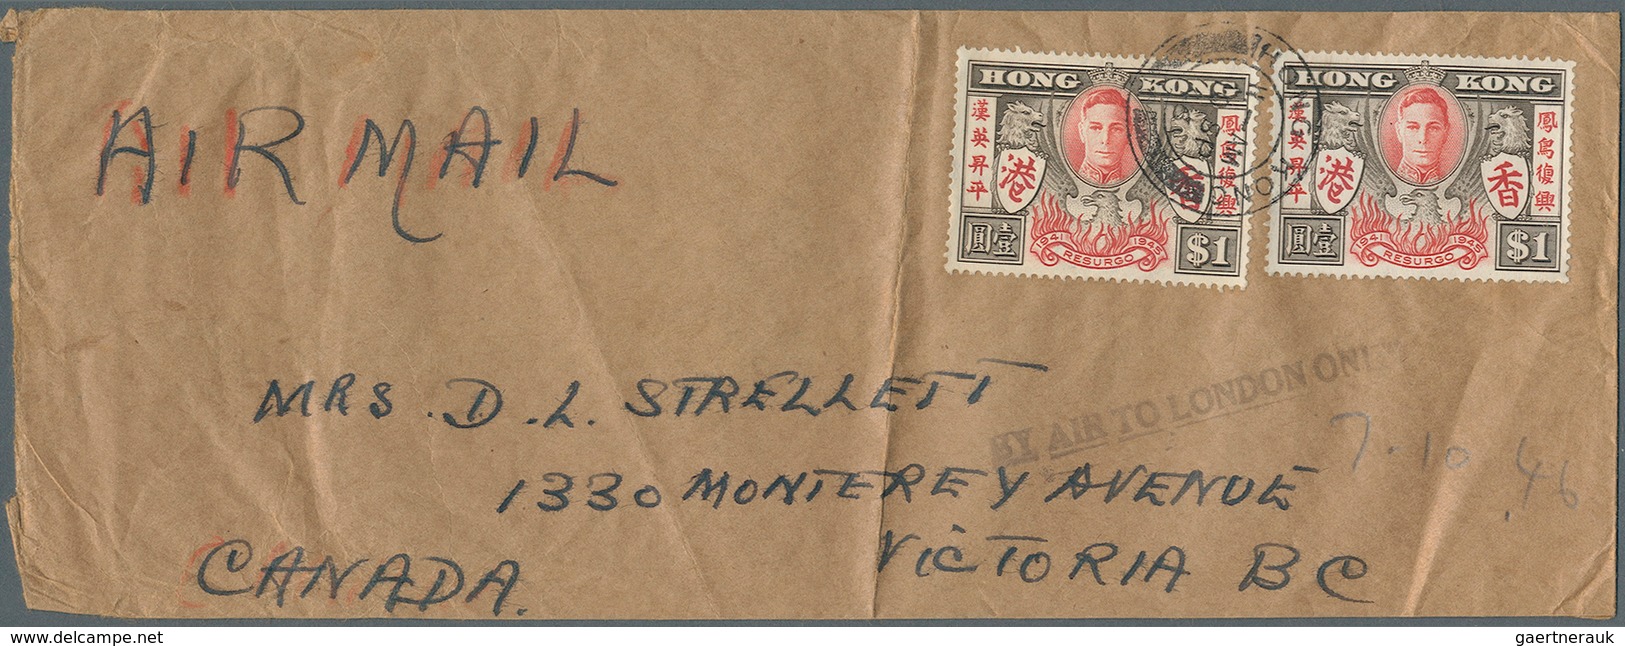 22677 Hongkong - Besonderheiten: 1938/57, the "Strellett" family correspondence between Hong Kong, Canada,